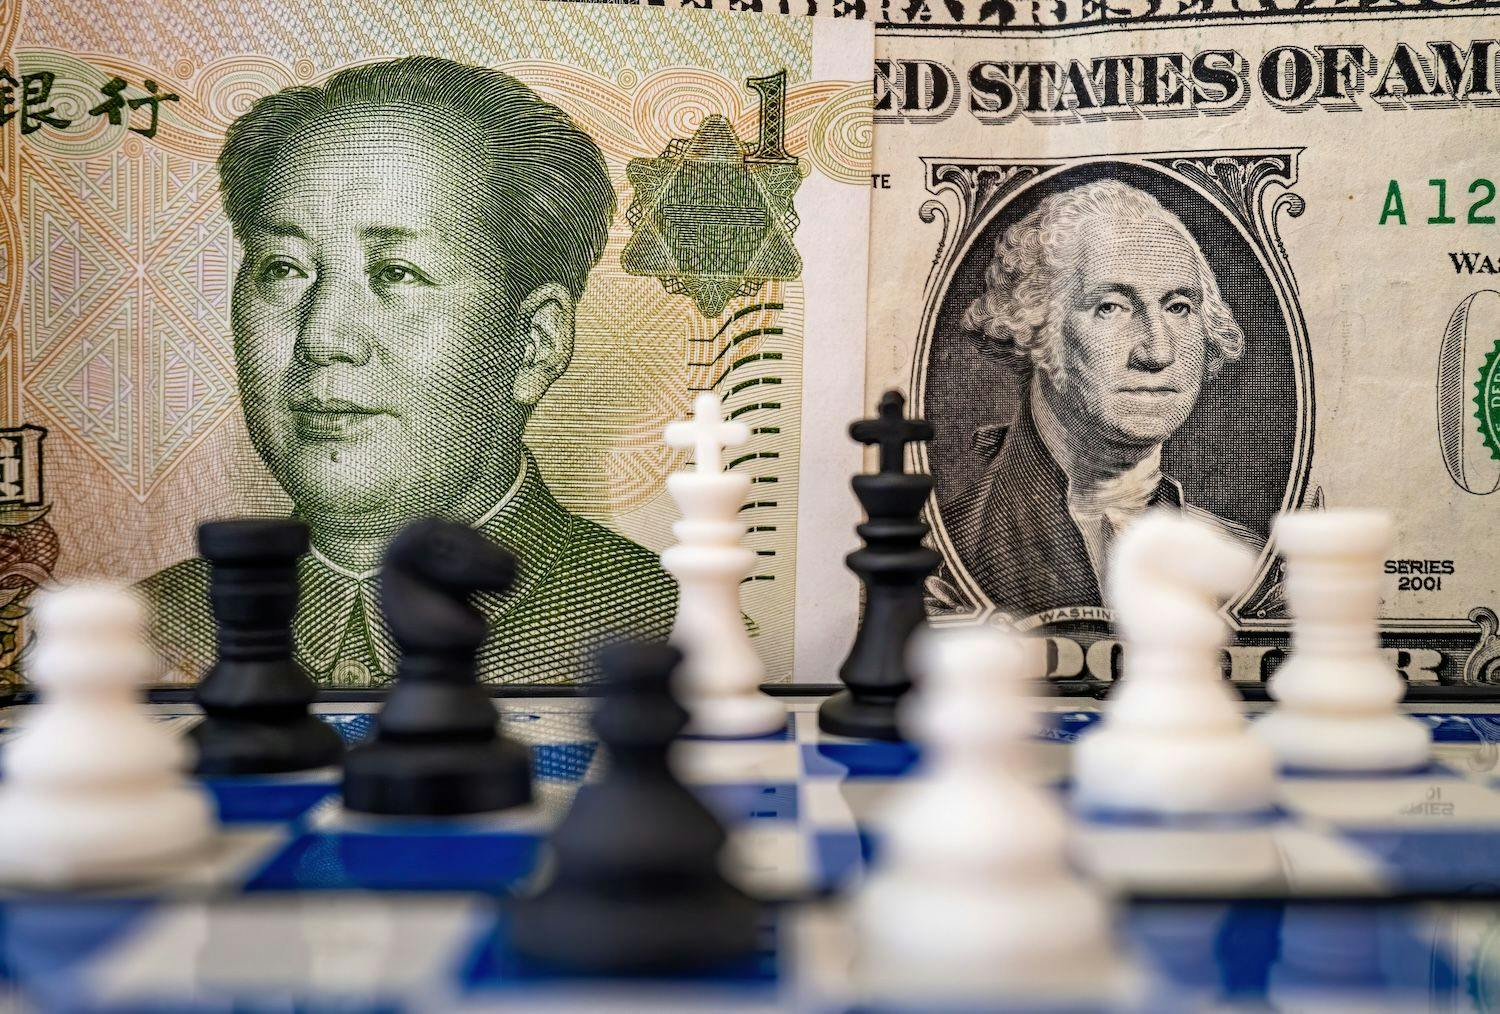 China Aktien, Aktienmarkt, Stocks, Kapitalmarkt, Finanzen: Nahaufnahme eines Schachbretts, auf dem ein US-Dollar und ein chinesischer Yuan liegen